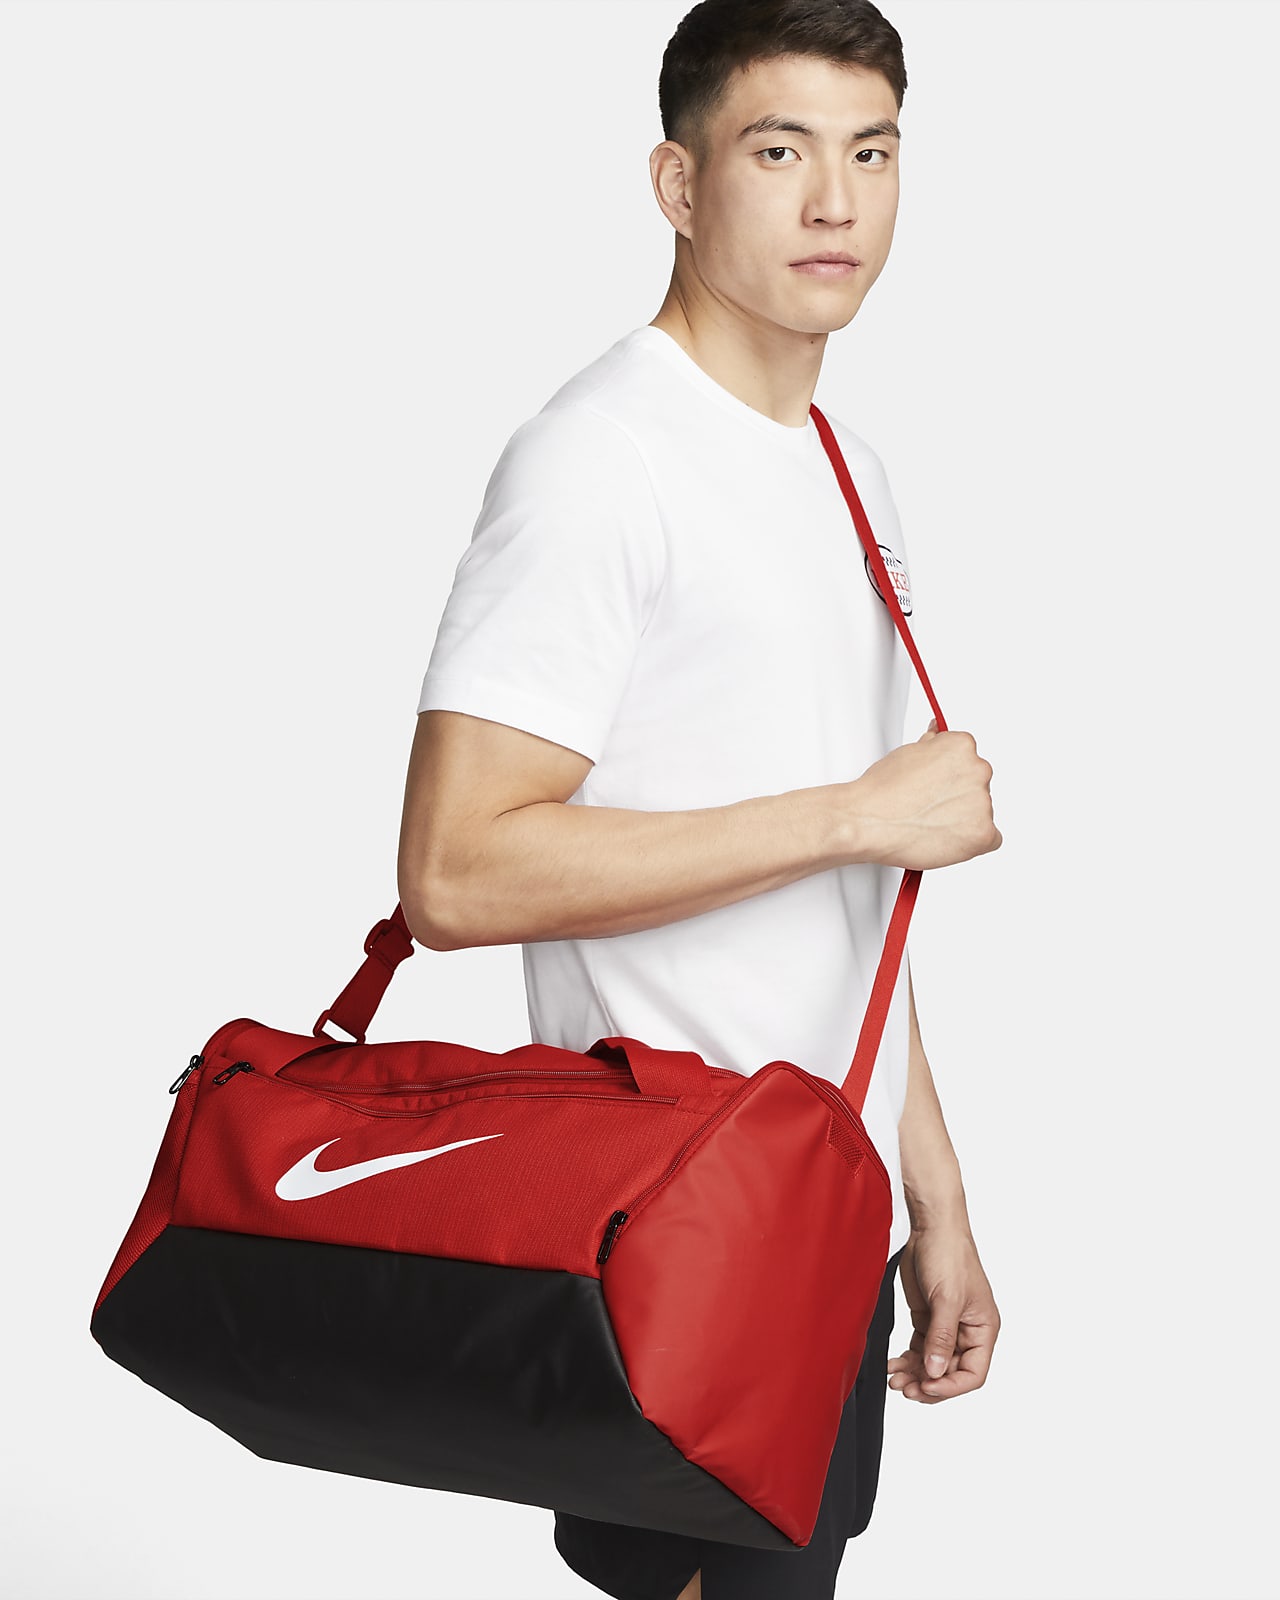 Τσάντα γυμναστηρίου για προπόνηση Nike Brasilia 9.5 (μέγεθος S, 41 L)